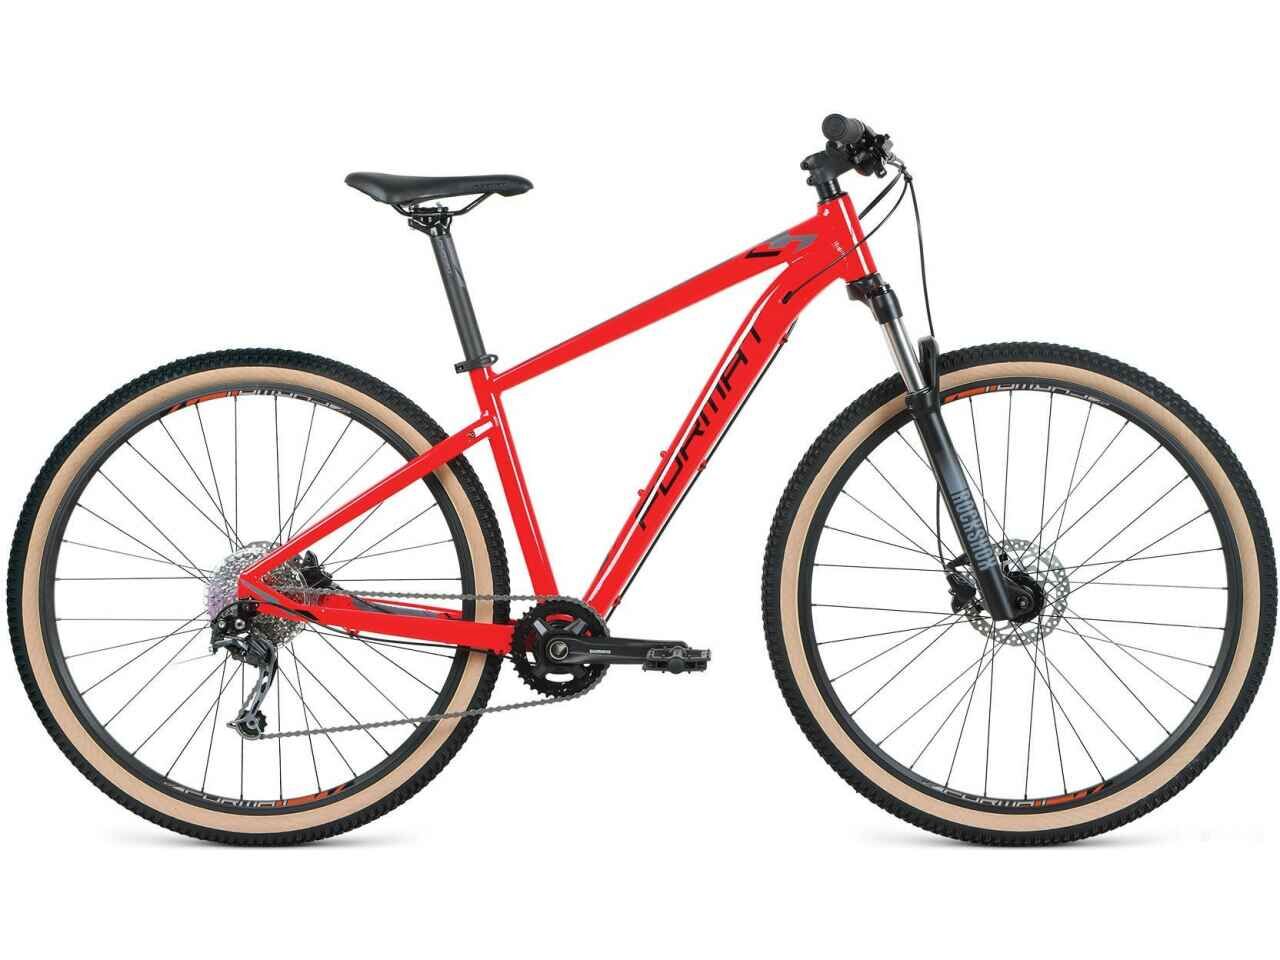 Велосипед Format 1411 27.5 M 2021 (красный)